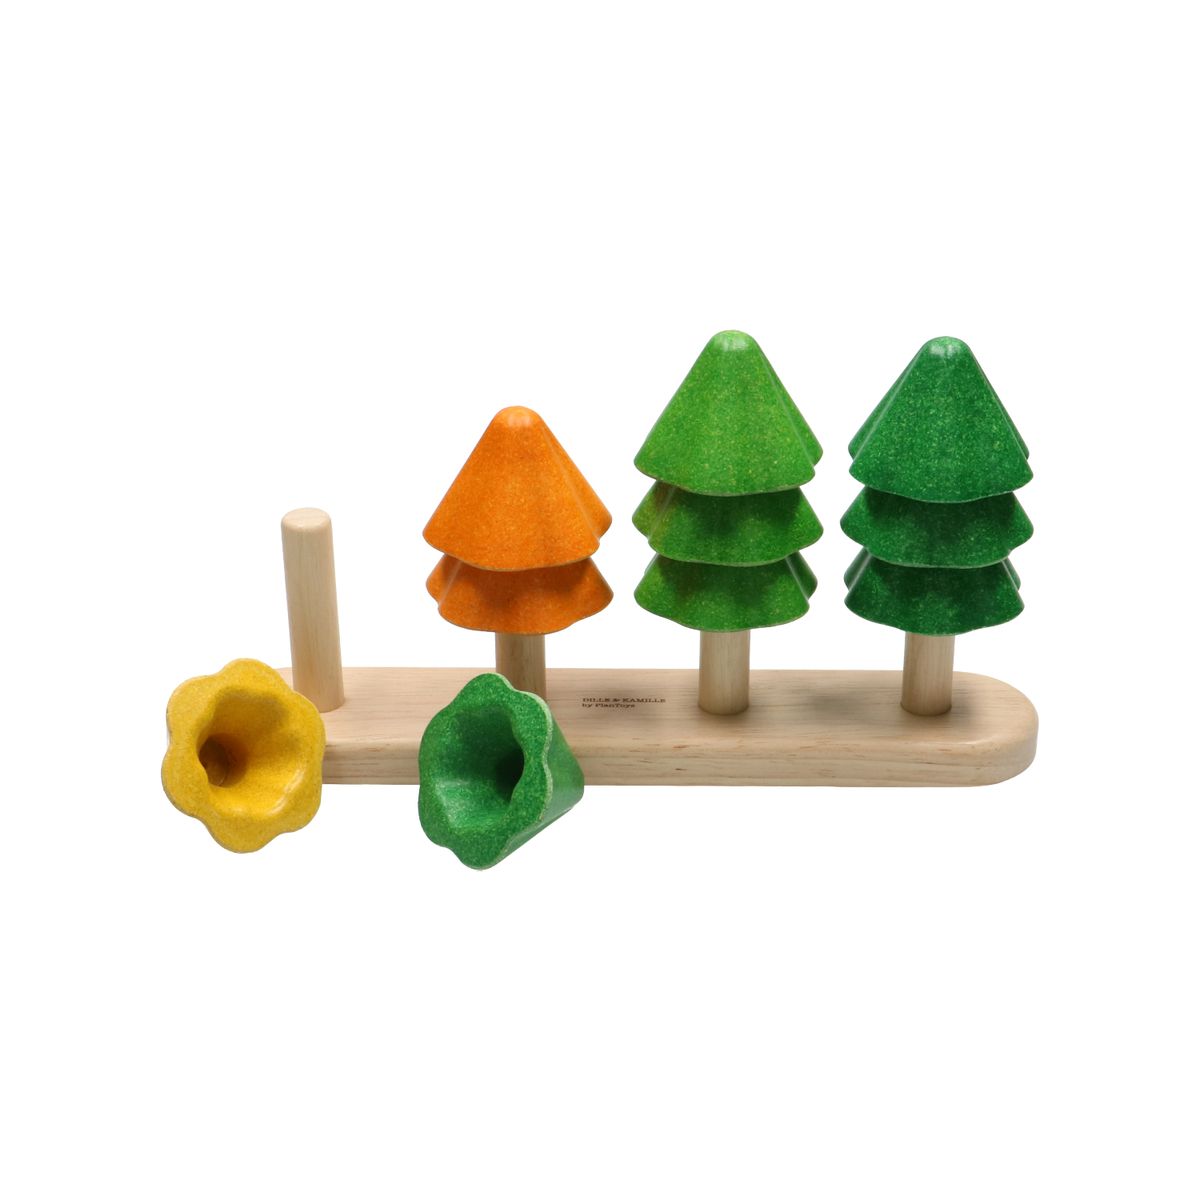 Distributie zone weefgetouw Stapelspel bomen, rubberhout, 18m+ | Speelgoed van 0 tot 3 jaar | Dille &  Kamille